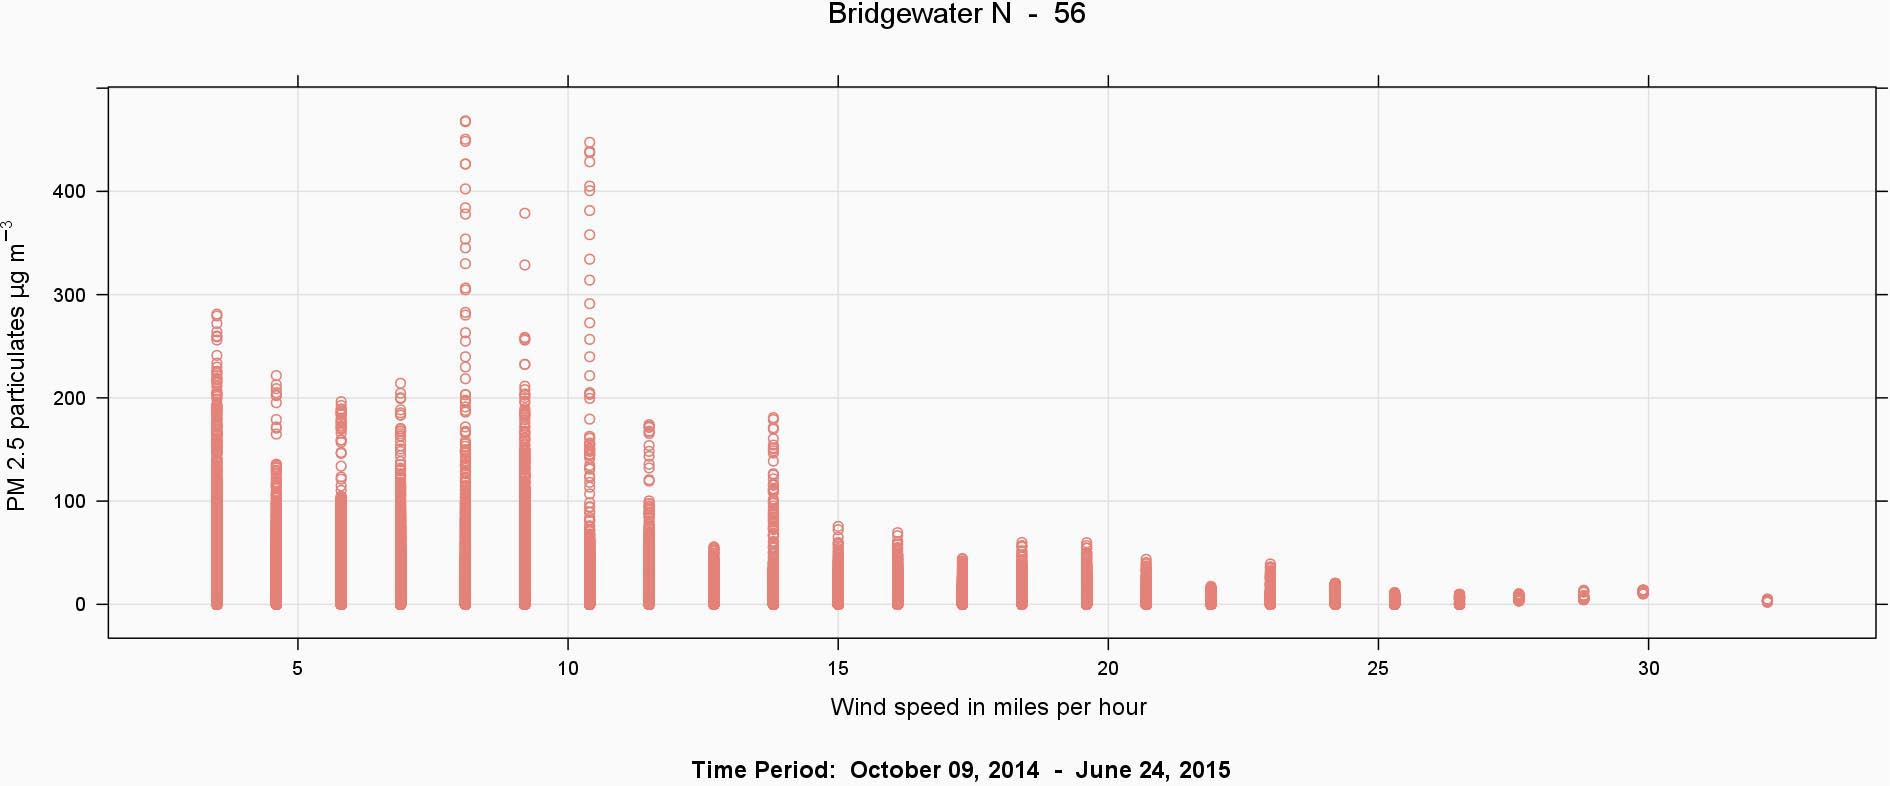 Fig7_BridgewaterN56_WindSp_Scatter-2